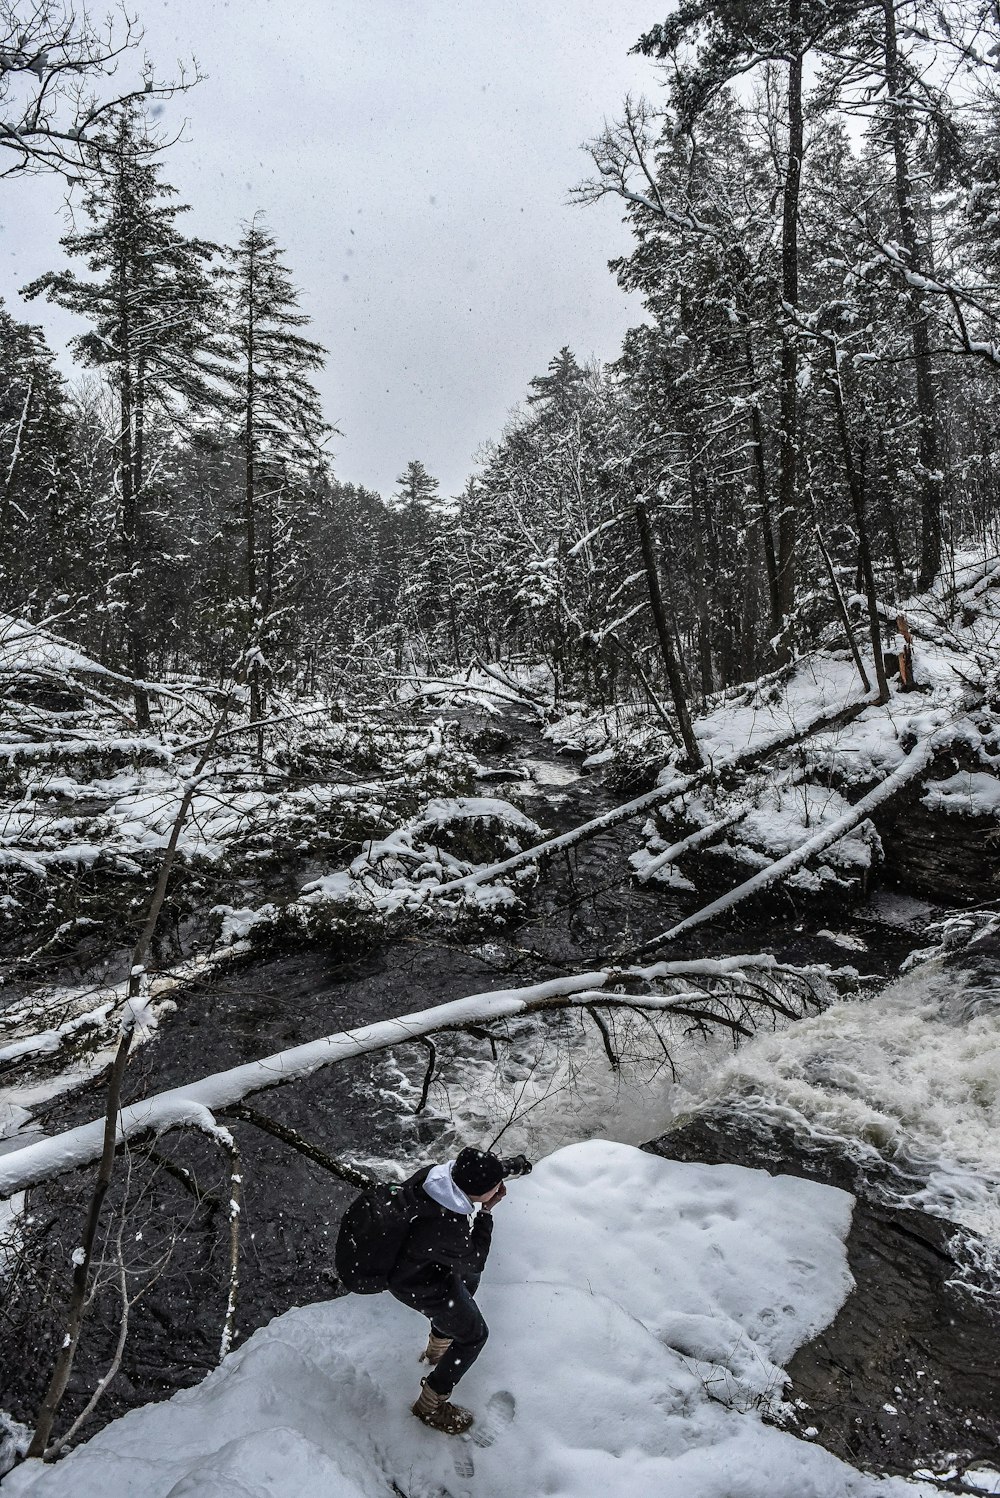 personne prenant une photo d’arbres tombés sur la neige